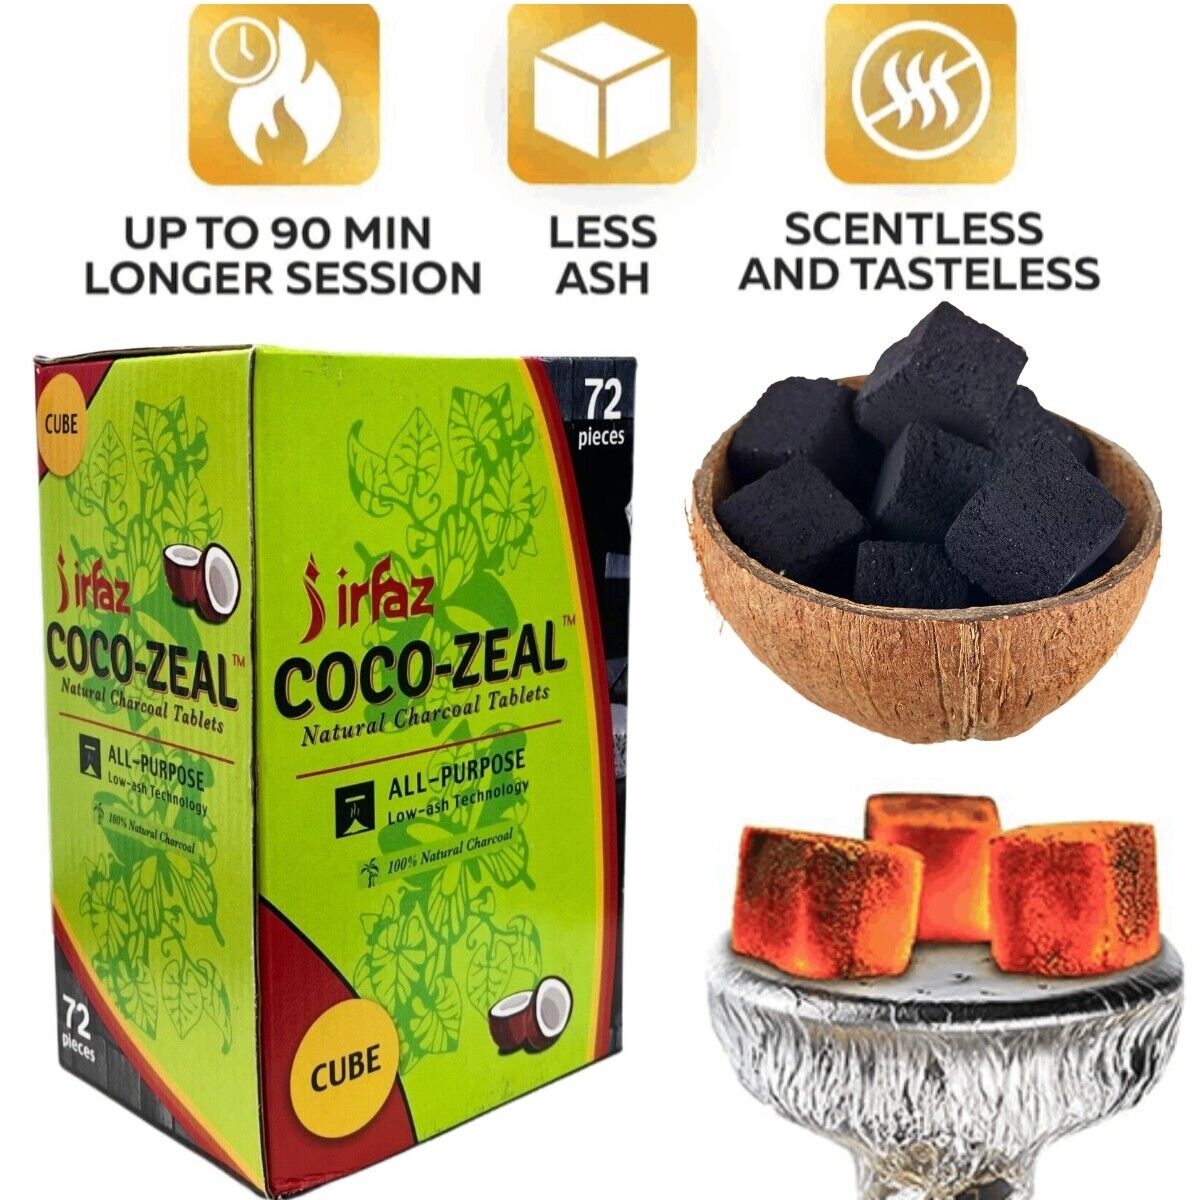 Afzal Coco-Zeal Coconut Charcoals Natural Hookah Coal Shisha 72 Piece/ 1kg Cubes